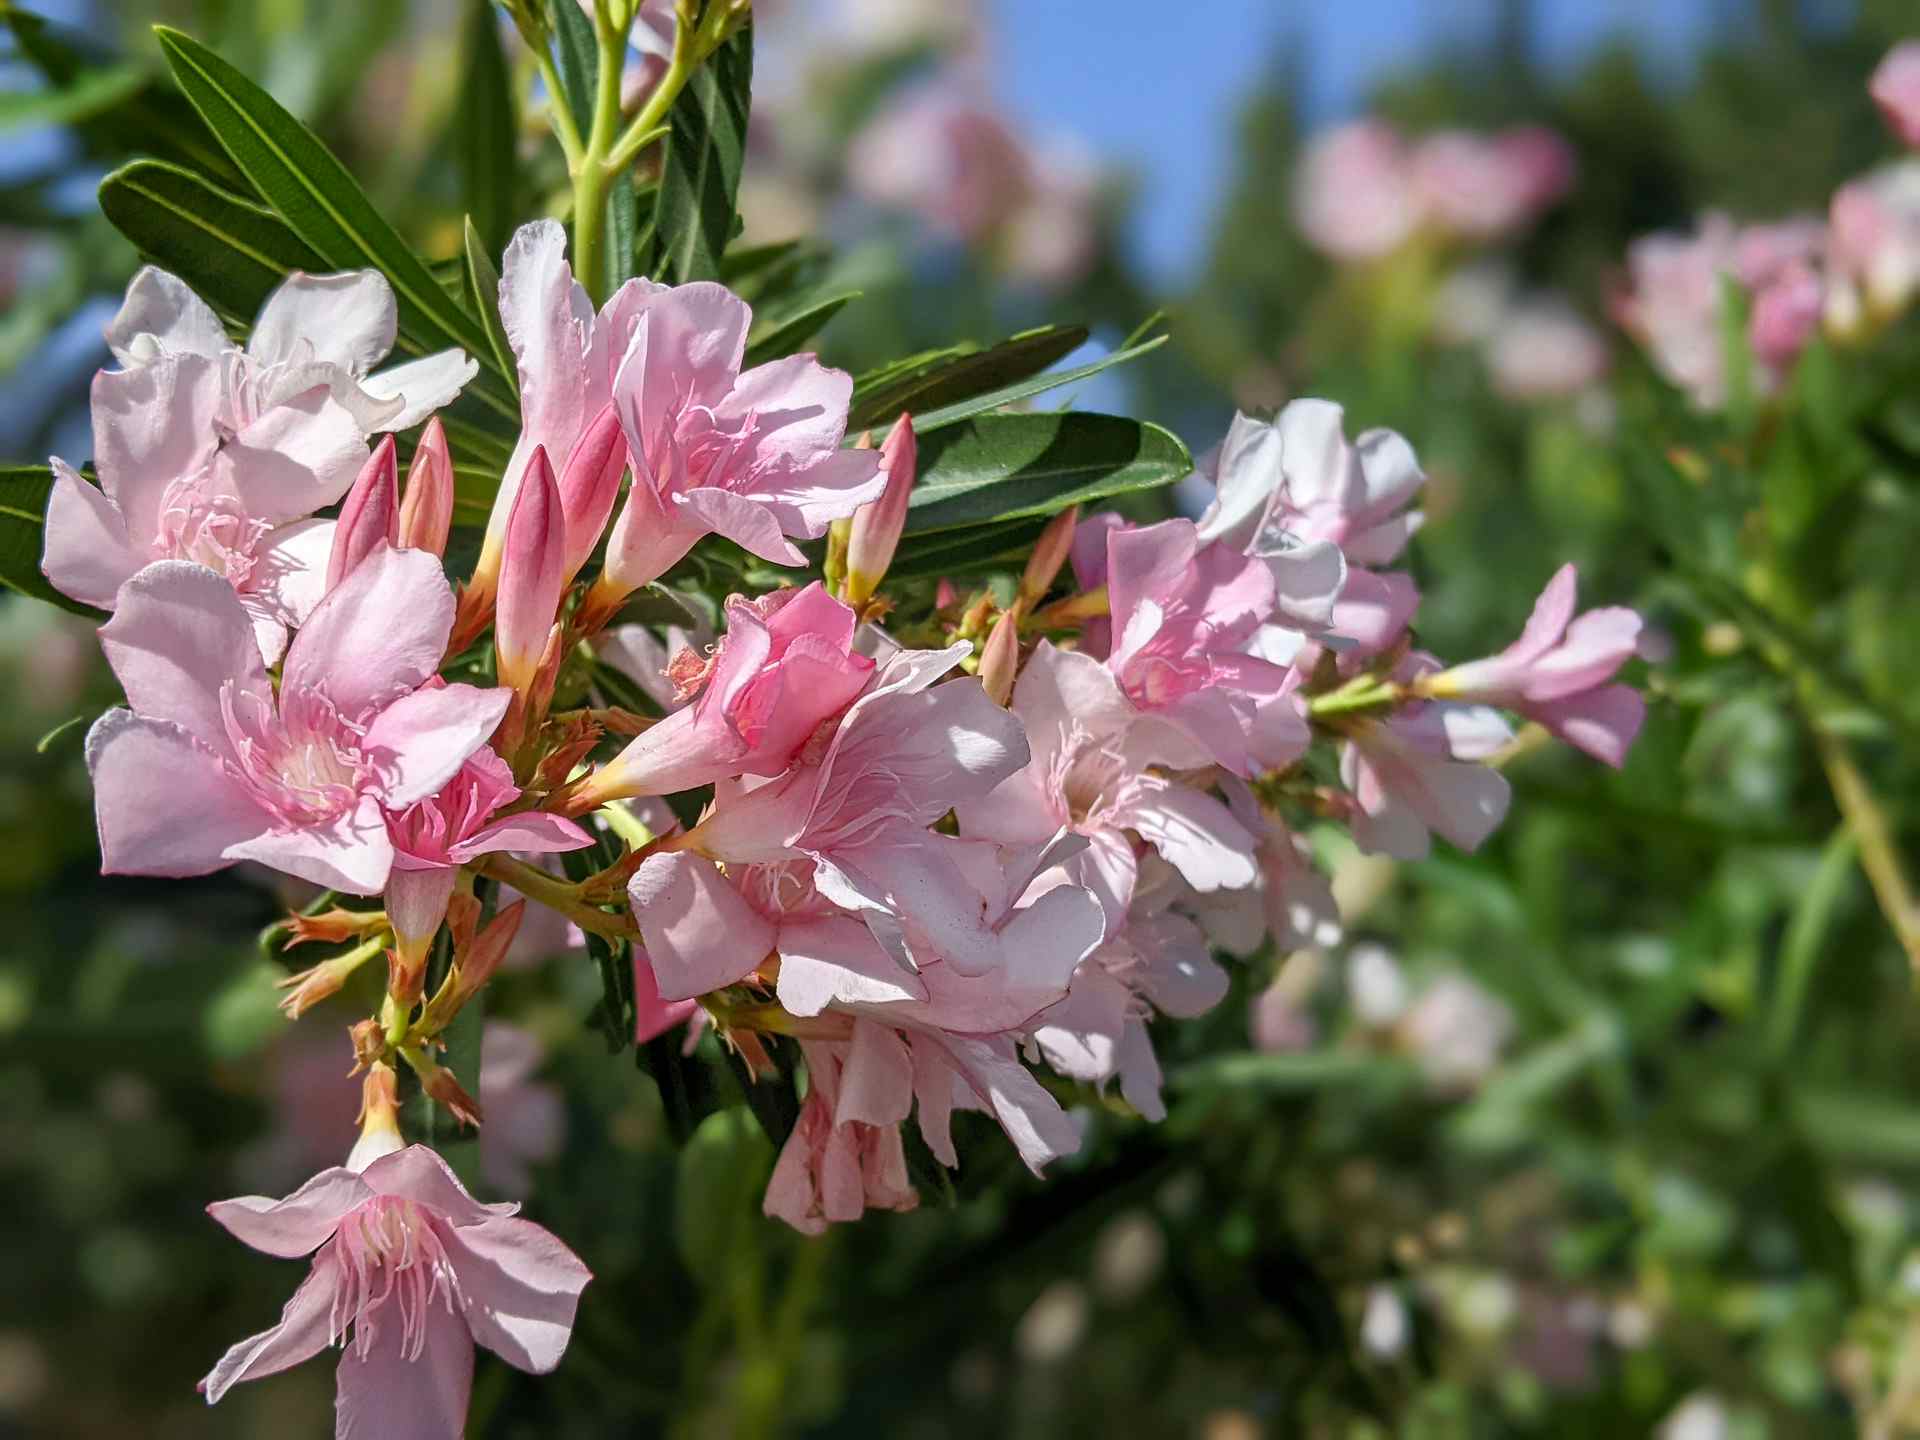 Close up shot of Oleander flowers.